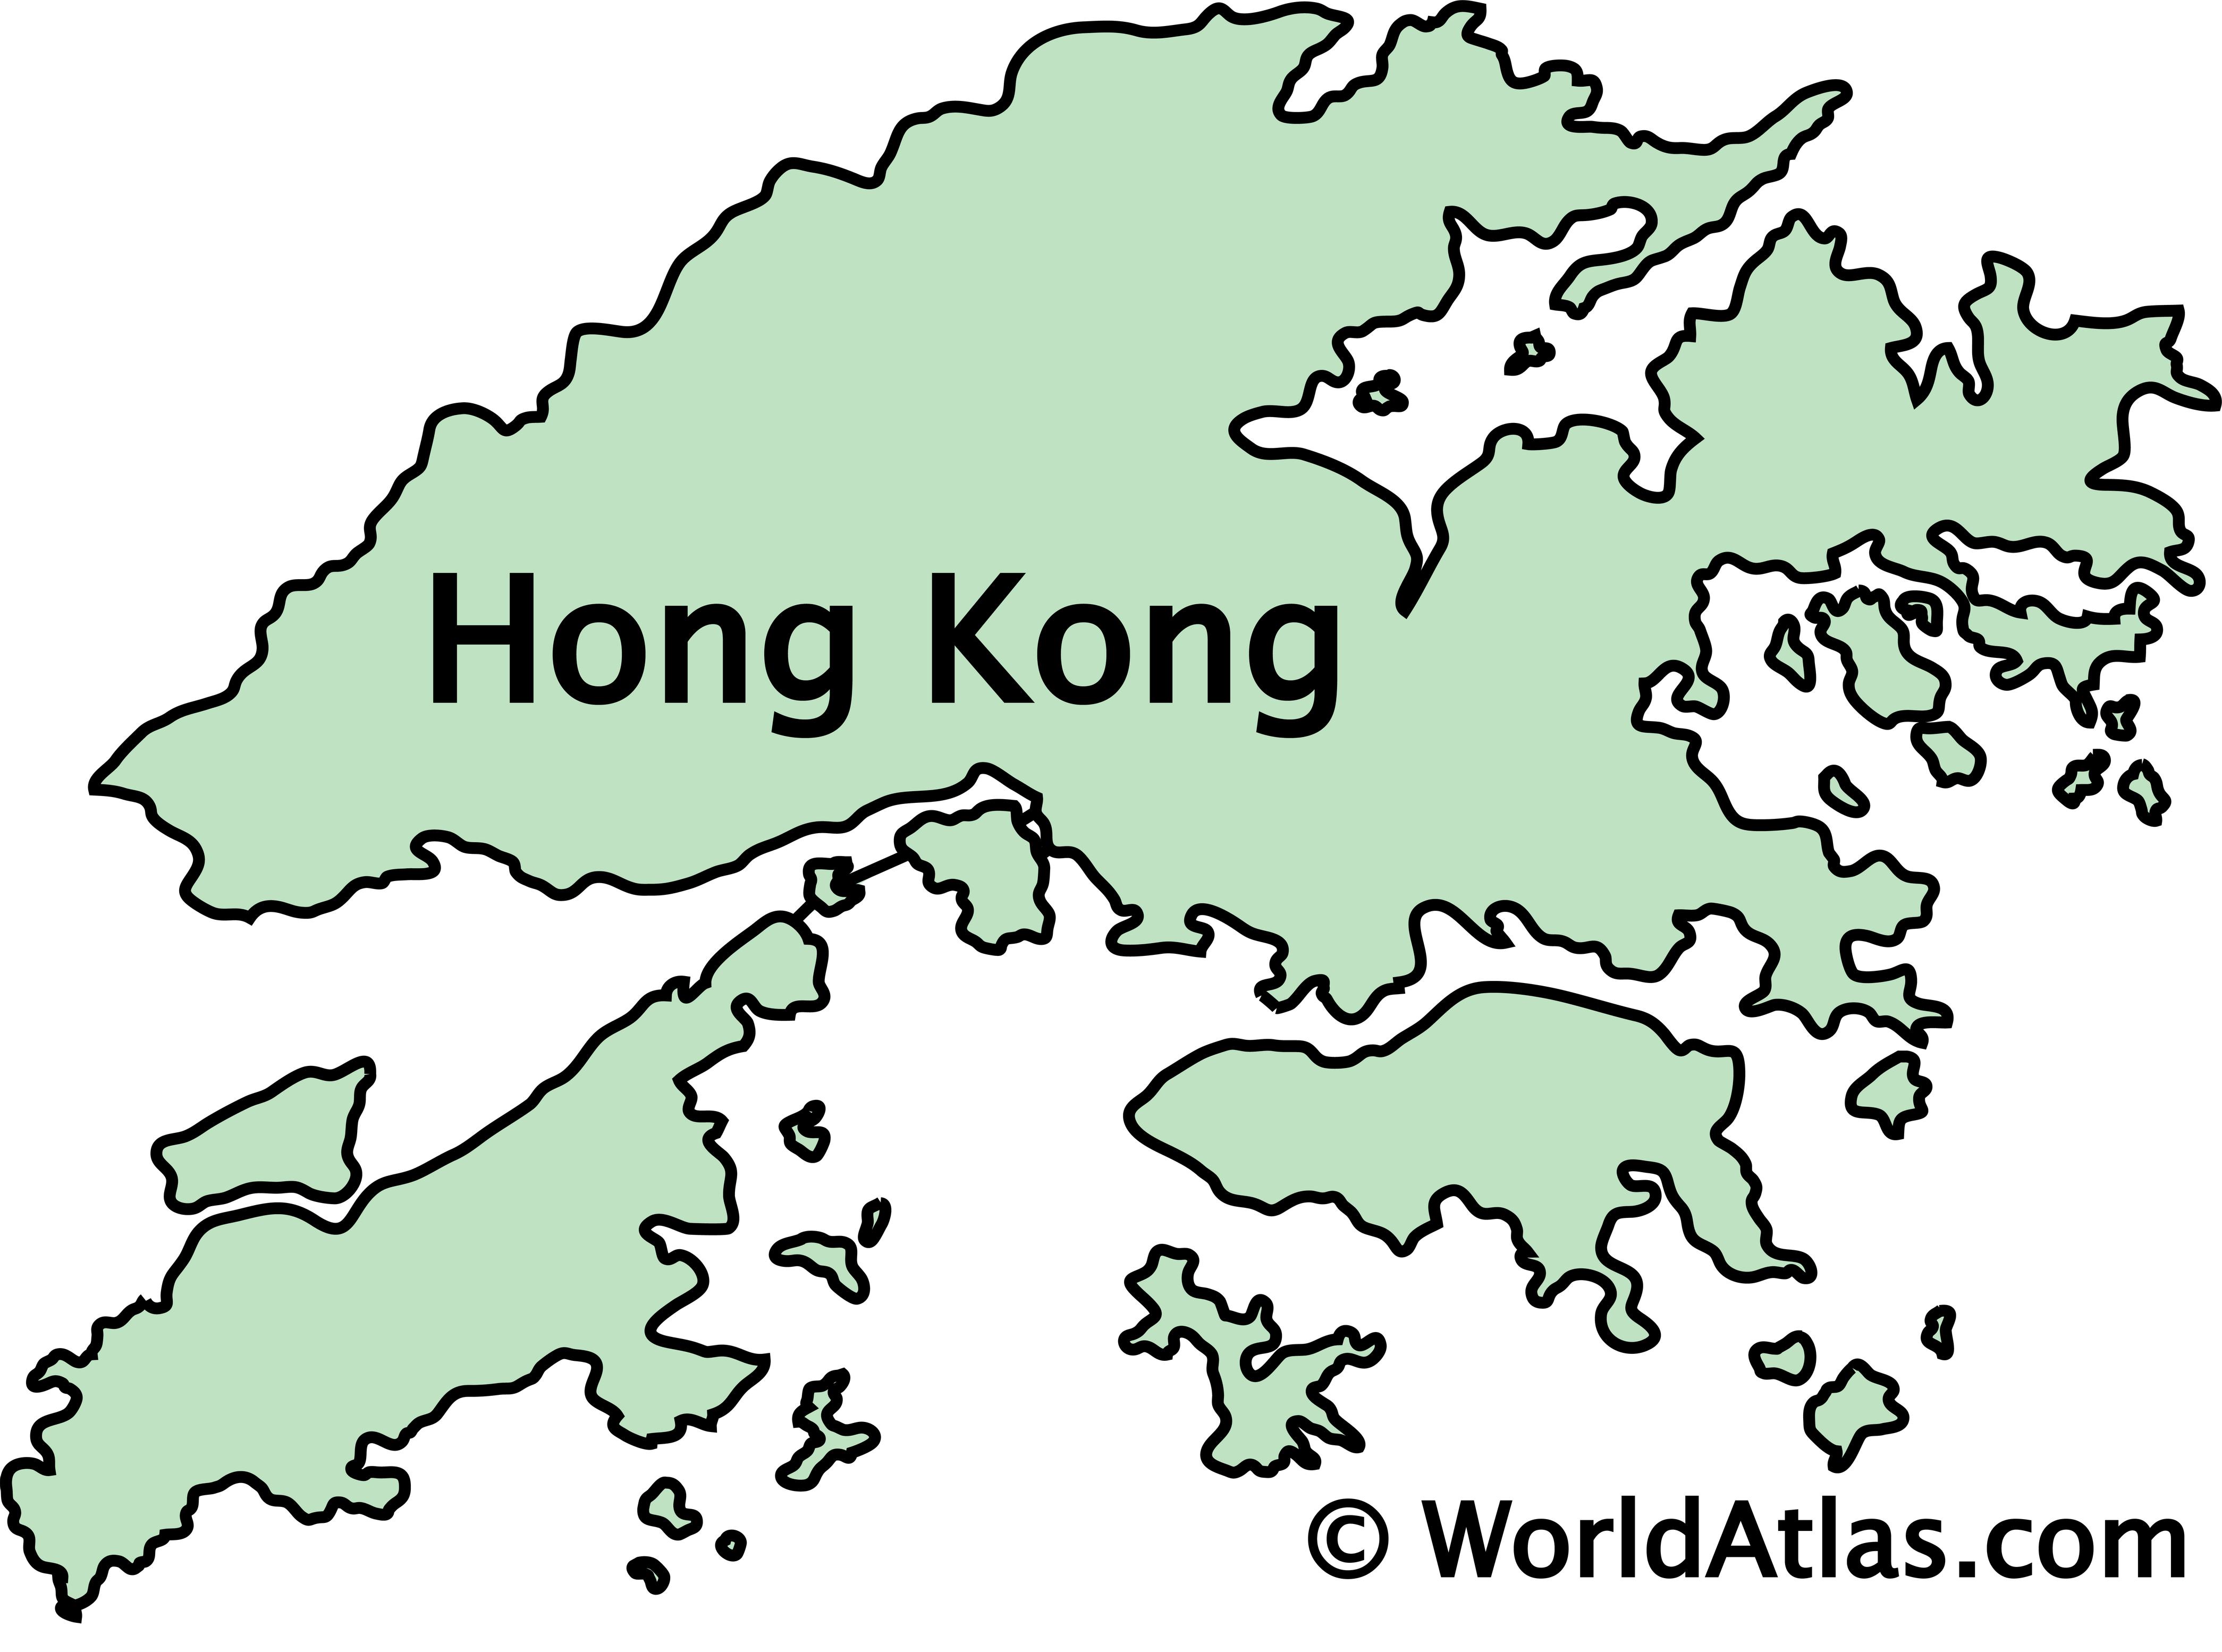 hong kong location